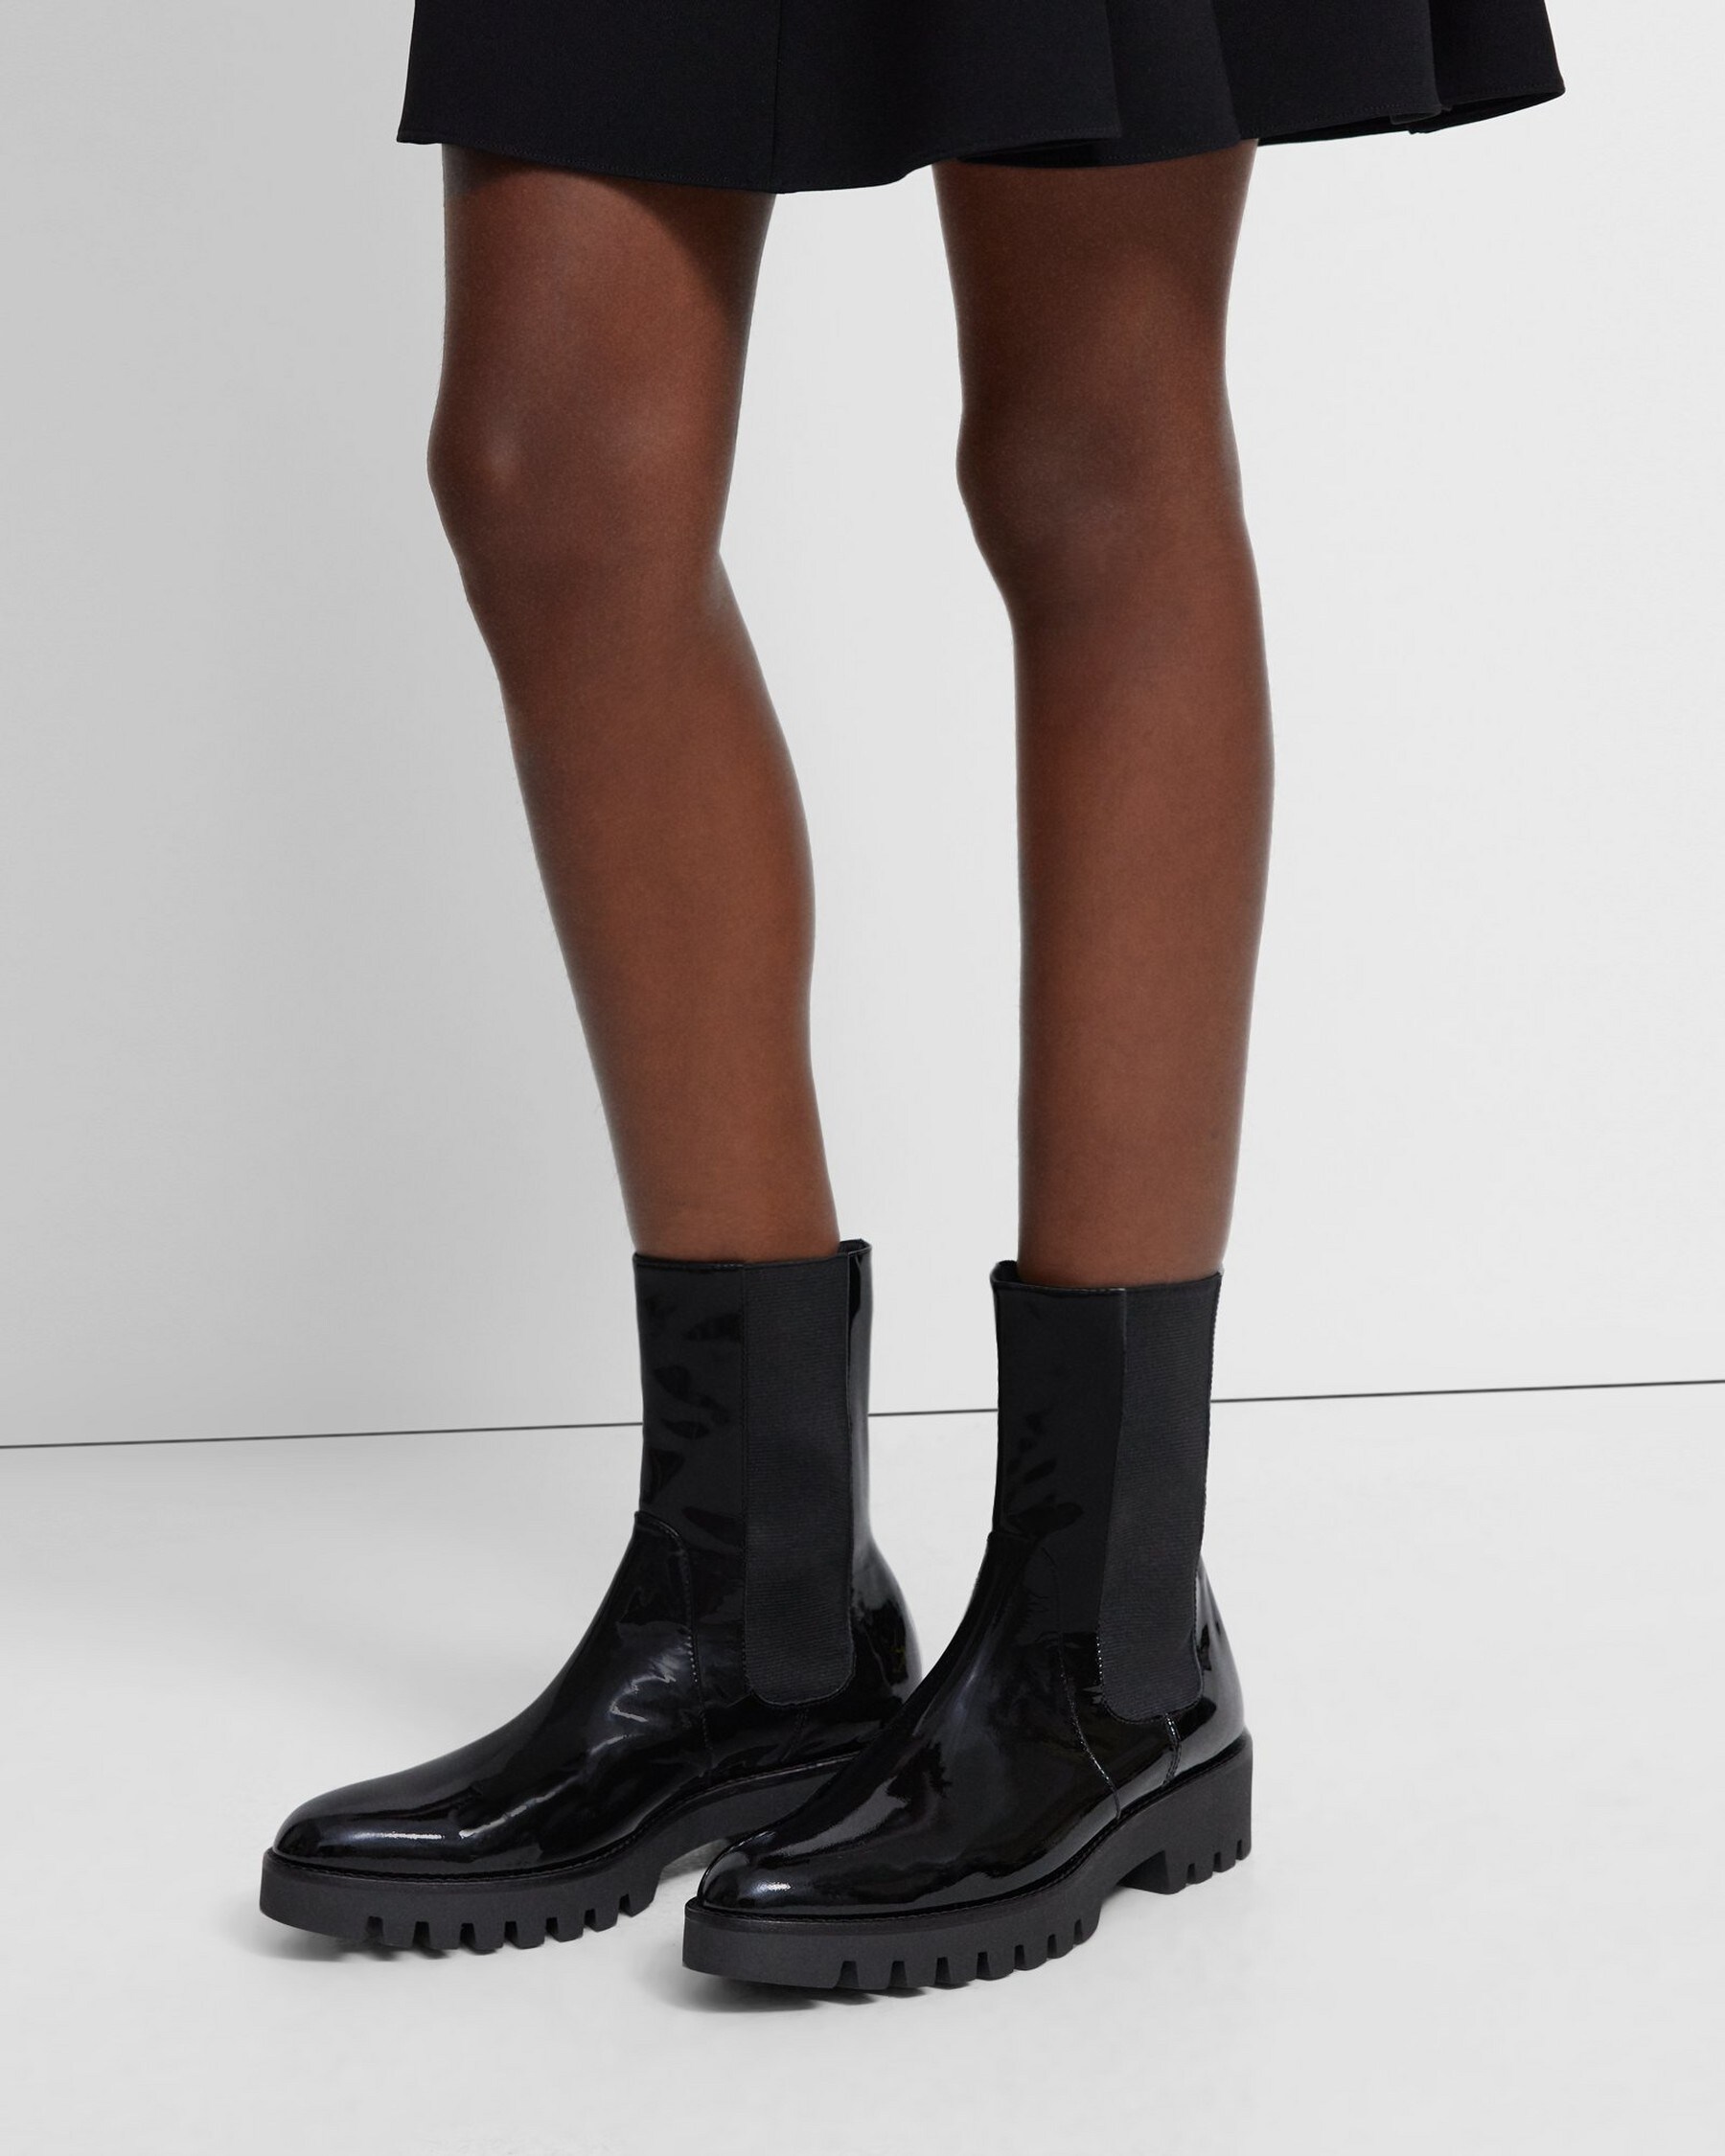 띠어리 Theory Chelsea Boot in Patent Leather,BLACK